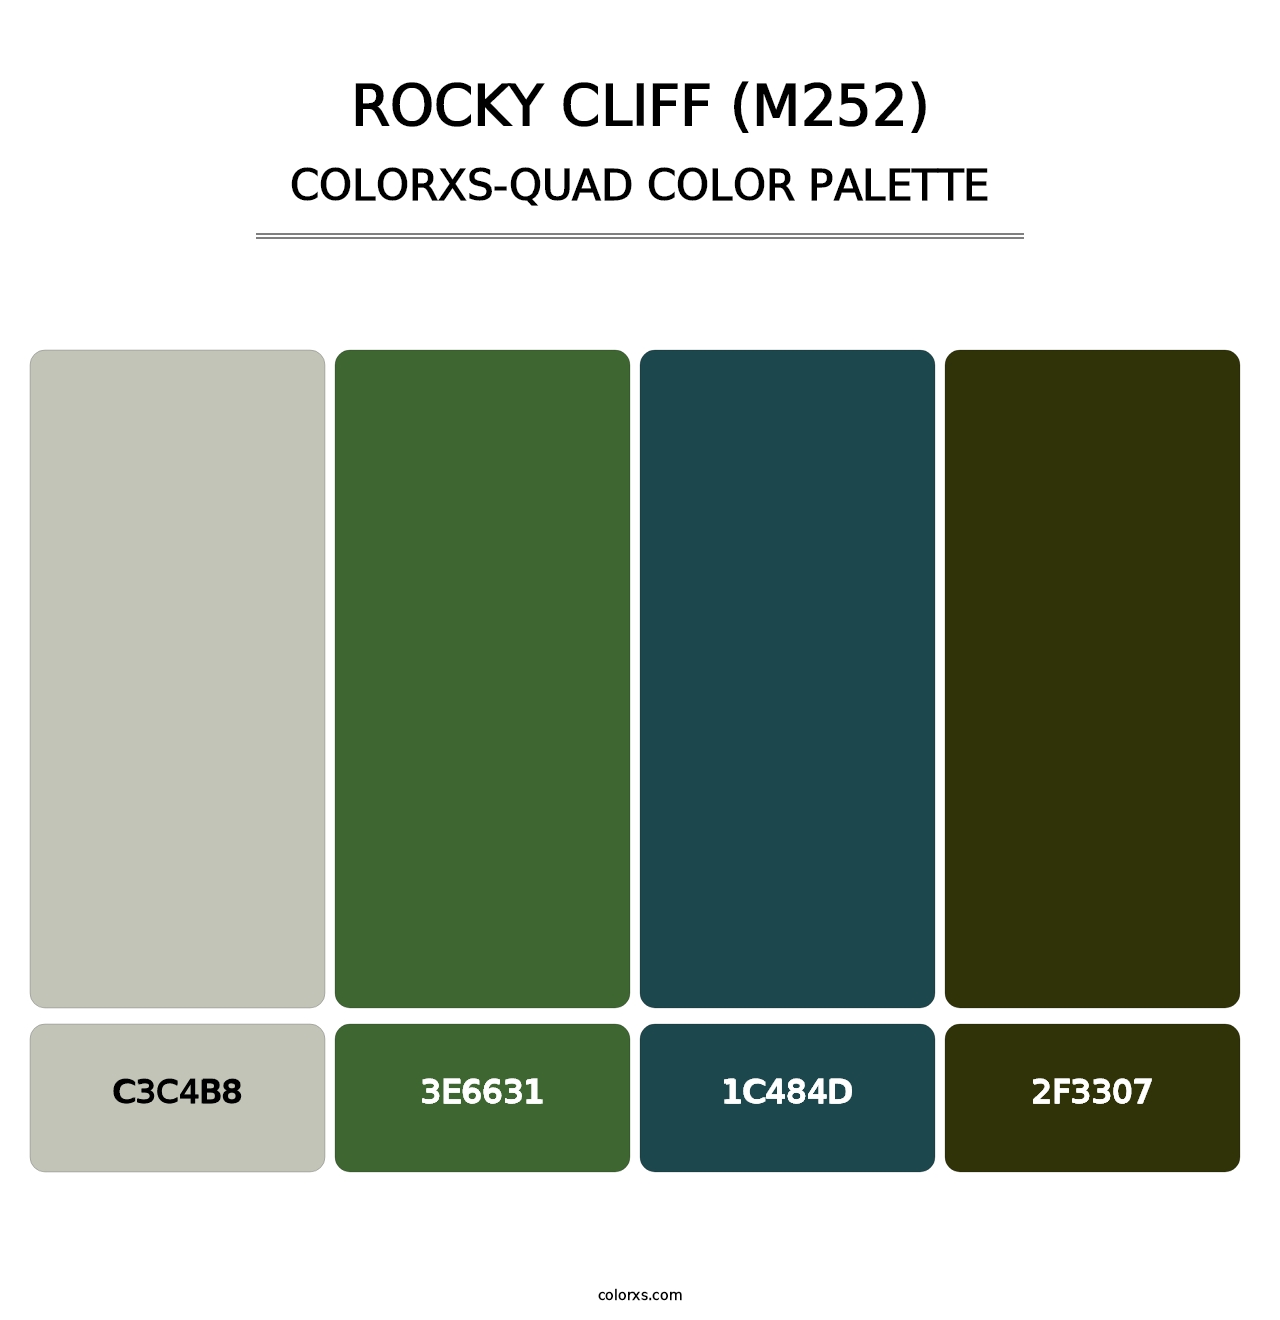 Rocky Cliff (M252) - Colorxs Quad Palette